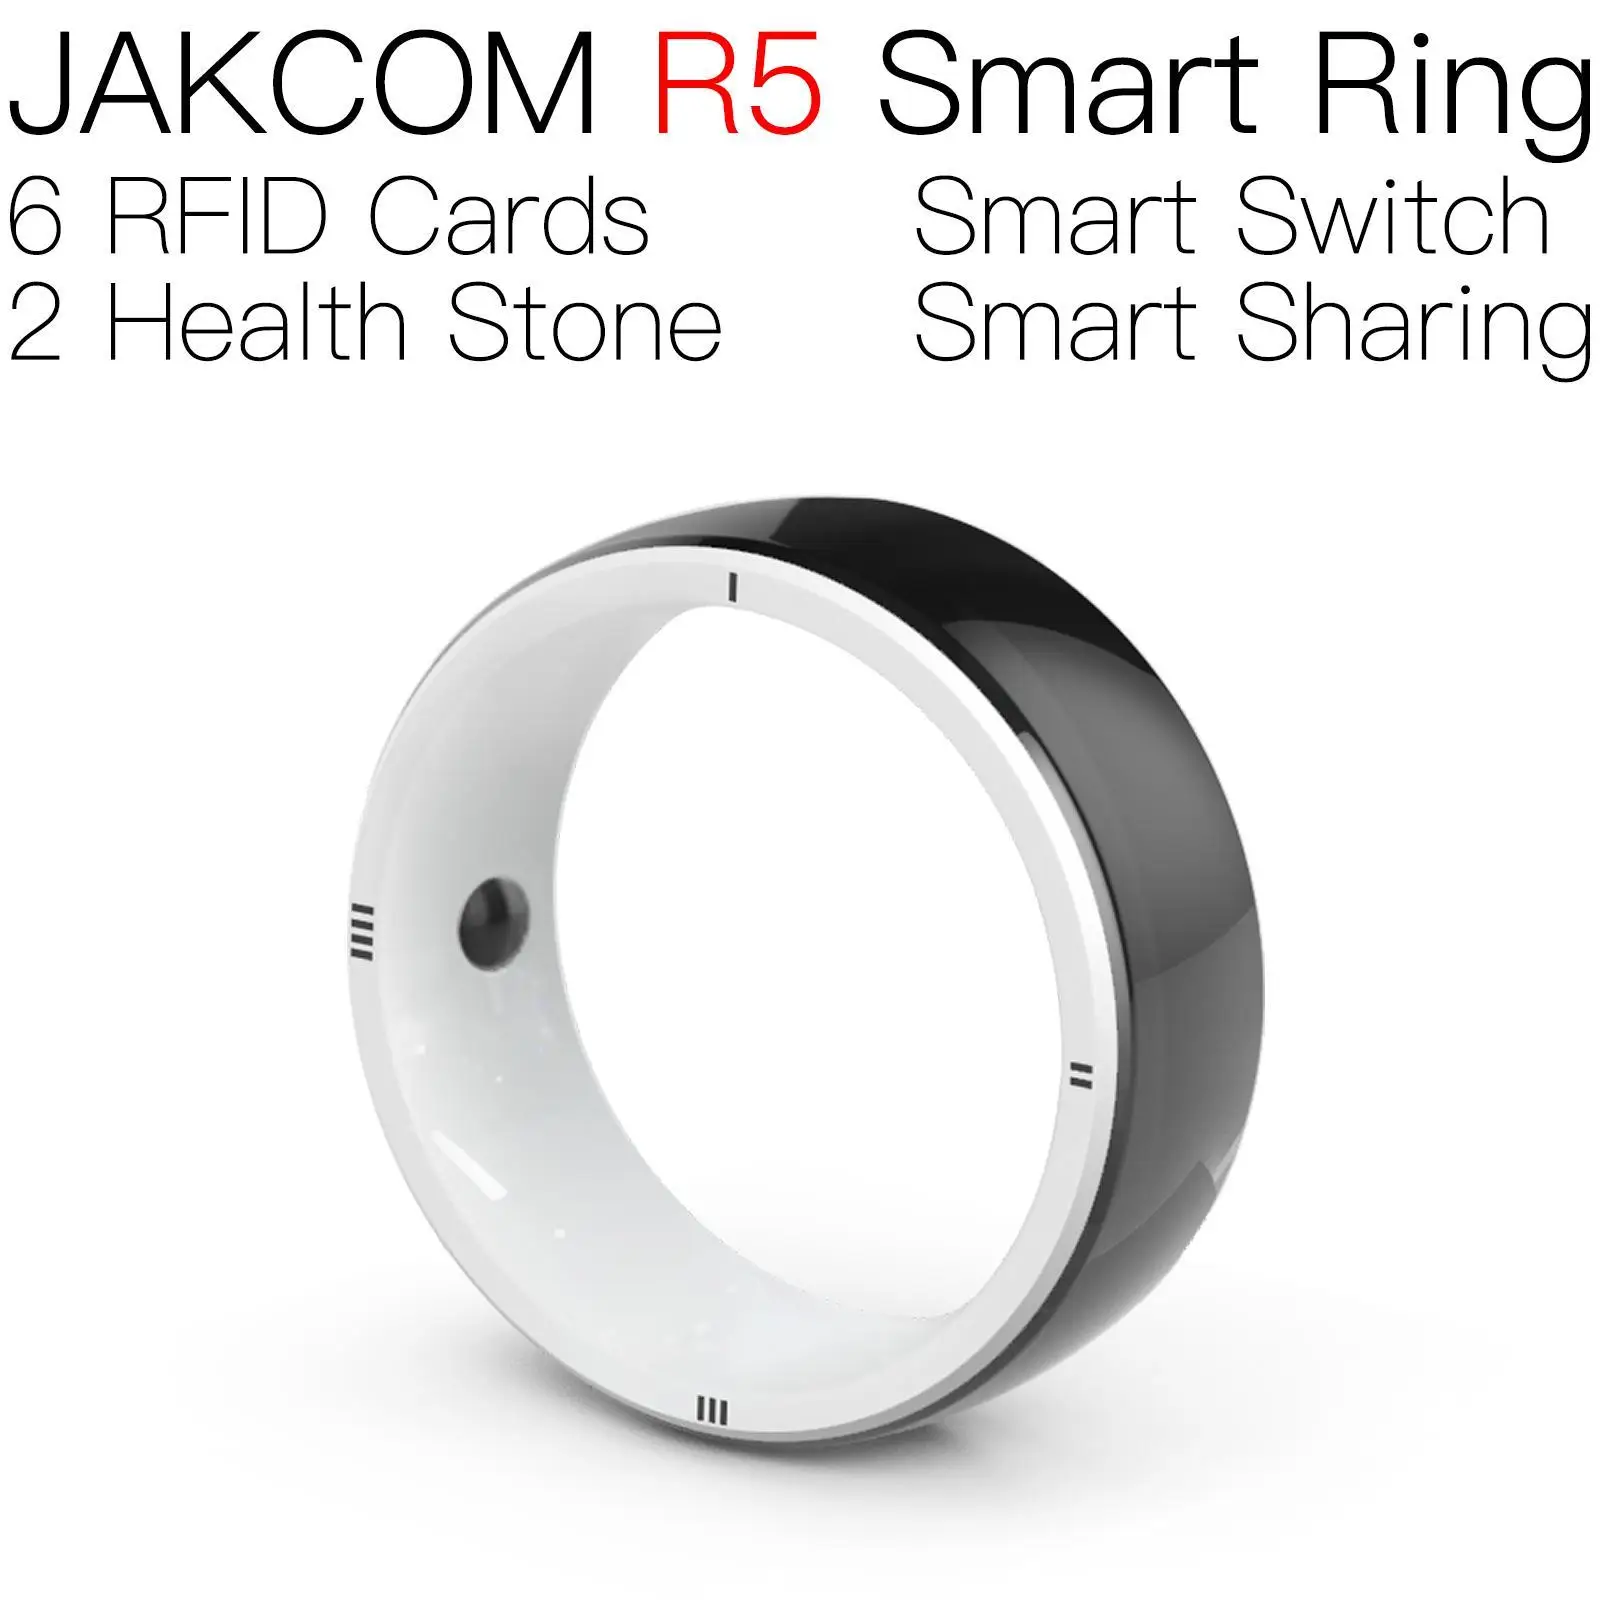 

Умное кольцо JAKCOM R5, супер значение как электрические компоненты, бытовая электроника, 8 мм микрочип, 7 байт, изменение uid, большой диапазон